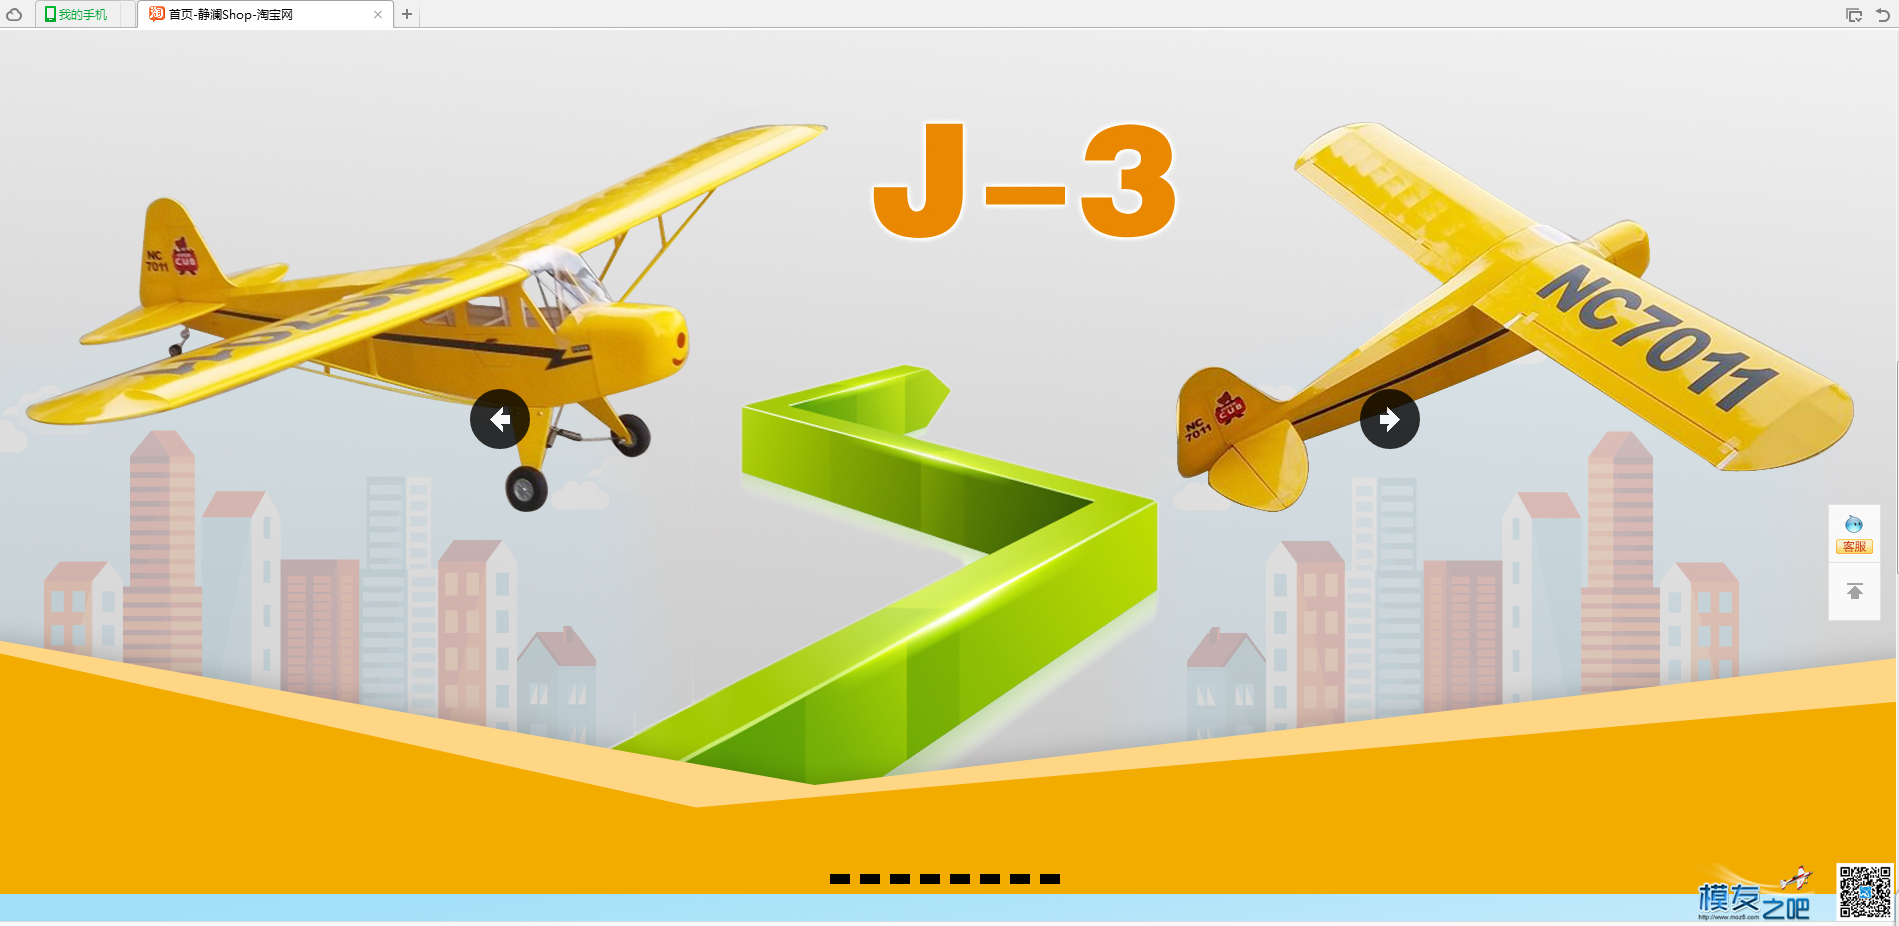 轻木练习机J-3 固定翼,轻木,练习,固定,详情 作者:流年 467 